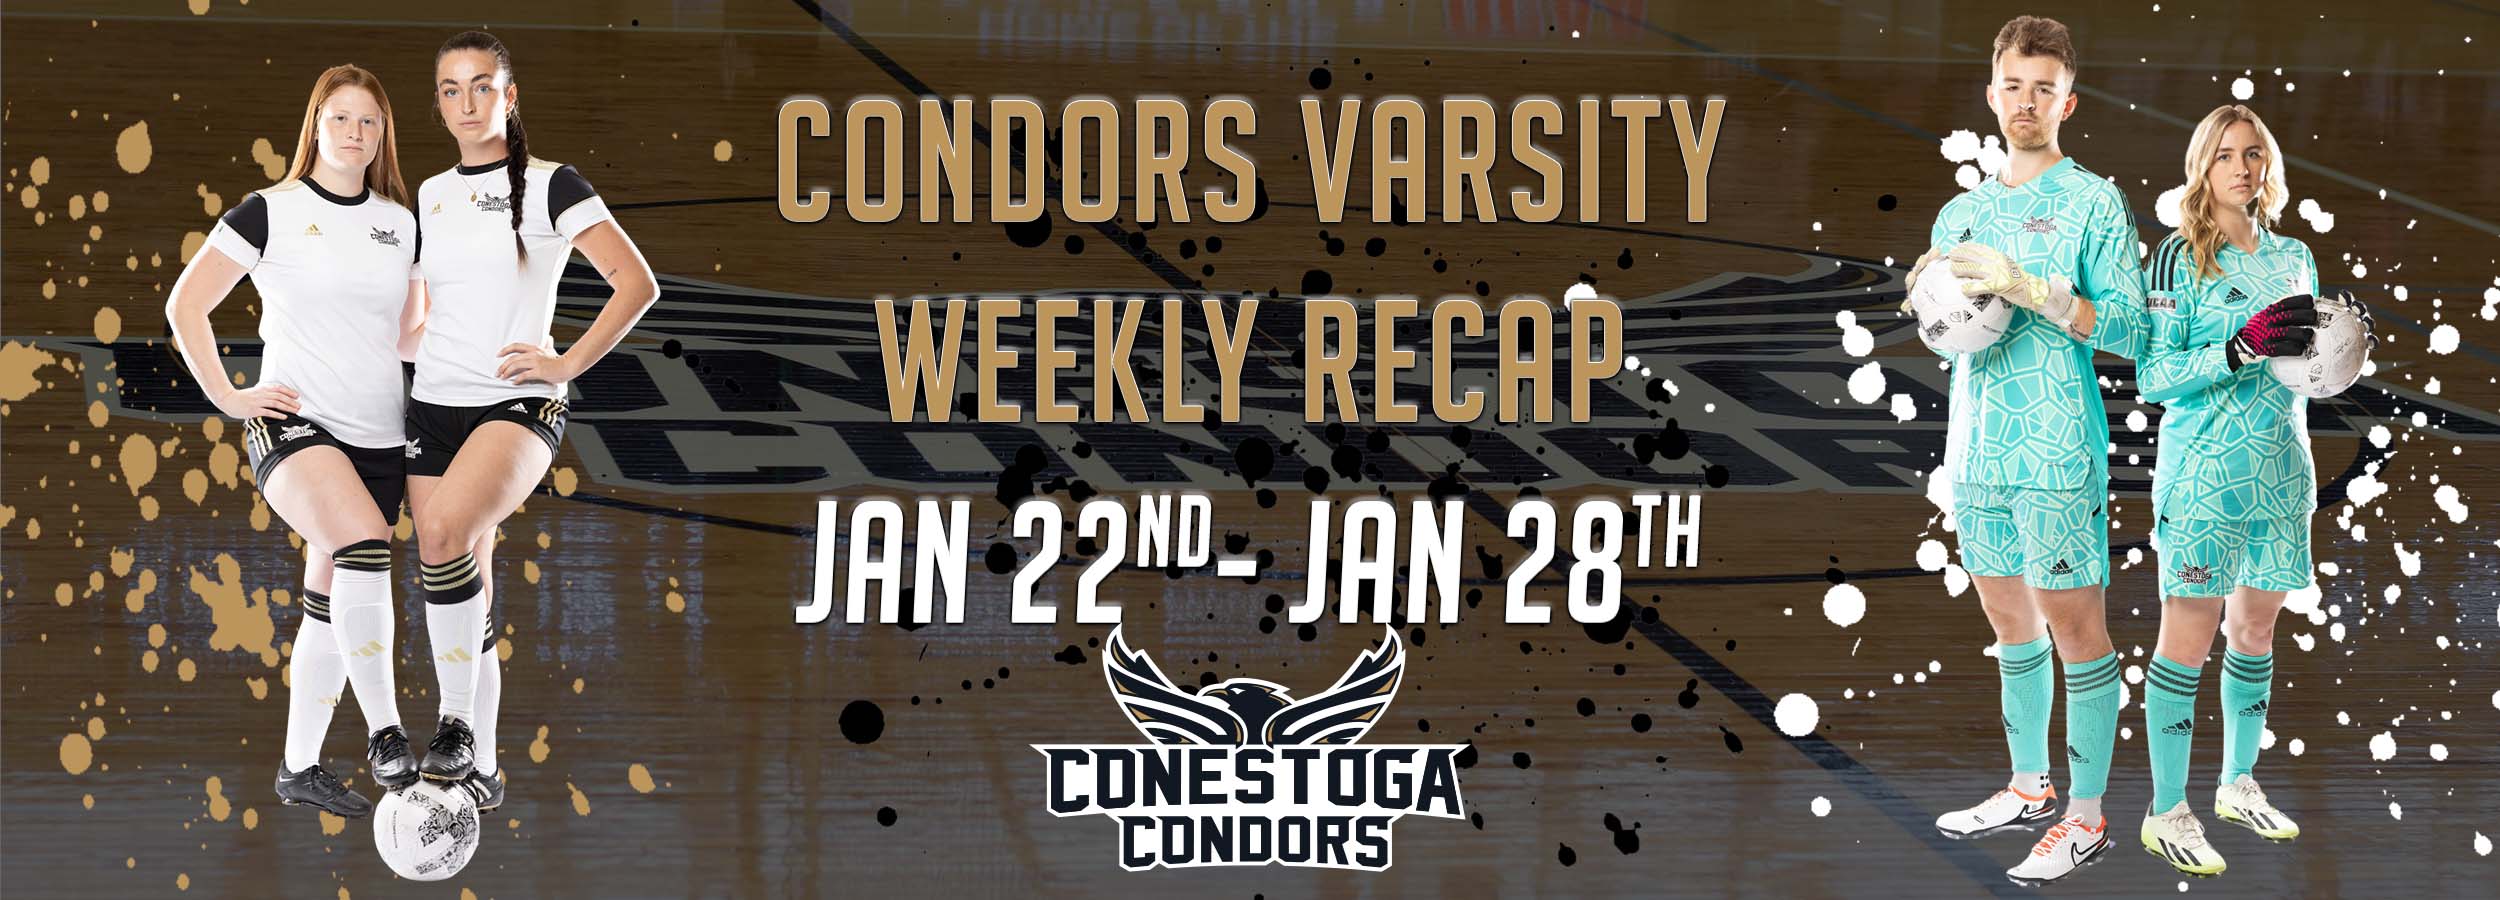 Condors Varsity Weekly Recap - January 22nd -28th